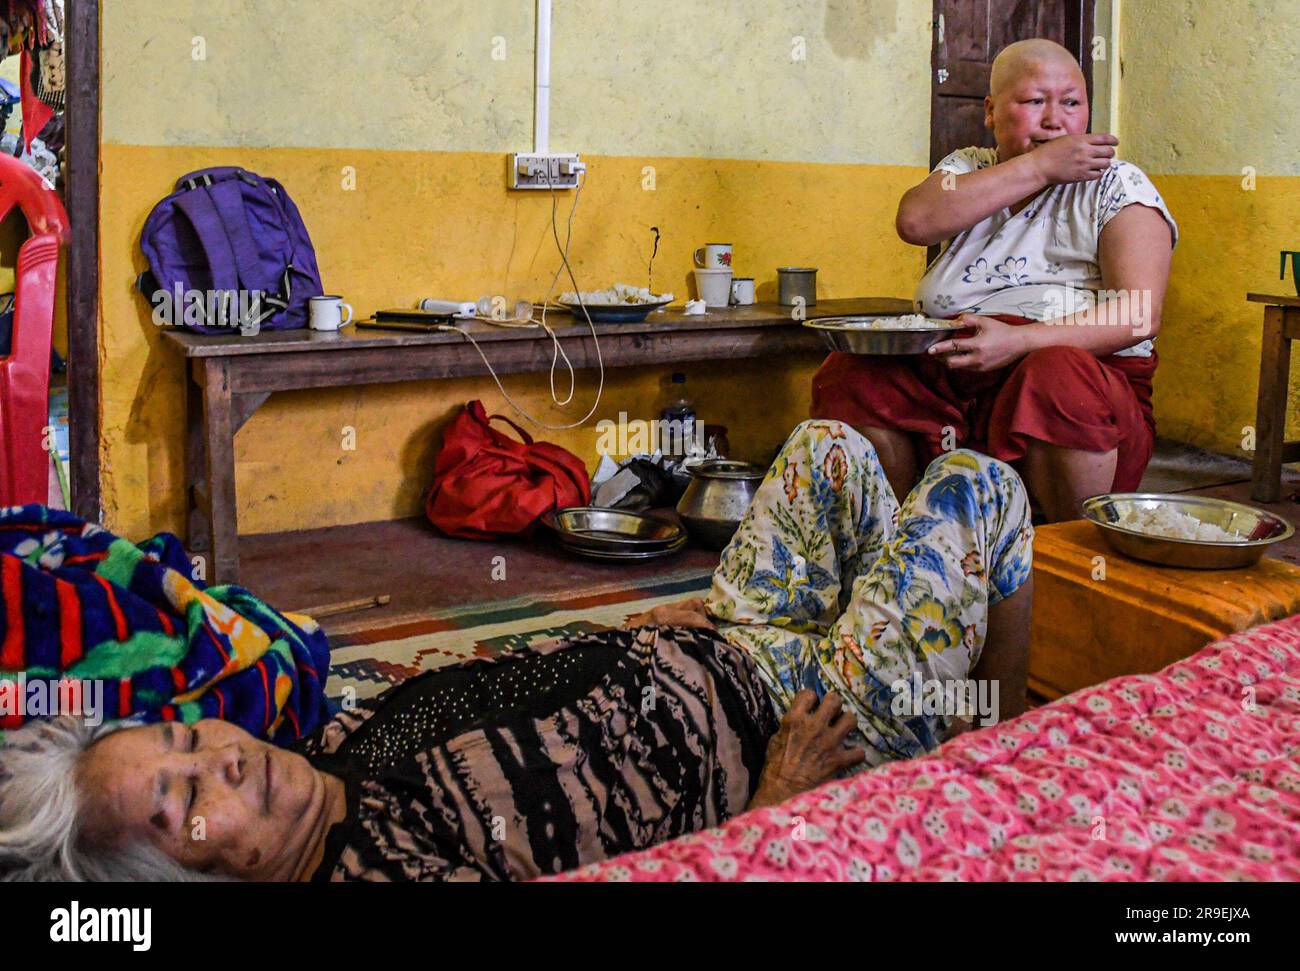 Krebspatientin Chinkhothang Baite (47) isst zu Mittag, während ihre kranke Mutter in einem Hilfslager im Dorf Rengkia auf einem Bett liegt. Am 3. Mai 2023 brach im nordöstlichen indischen Bundesstaat Manipur ein ethnischer Konflikt zwischen dem Volk der Meitei, das mehrheitlich im Imphal-Tal lebt, und den Stammesgemeinschaften in den umliegenden Bergen, einschließlich Kuki und Zo, aus. Mindestens 109 Menschen sind bei ethnisch motivierter Gewalt zwischen der Meitei und den Kuki im indischen Bundesstaat Manipur ums Leben gekommen und über 300 wurden verletzt. Stockfoto